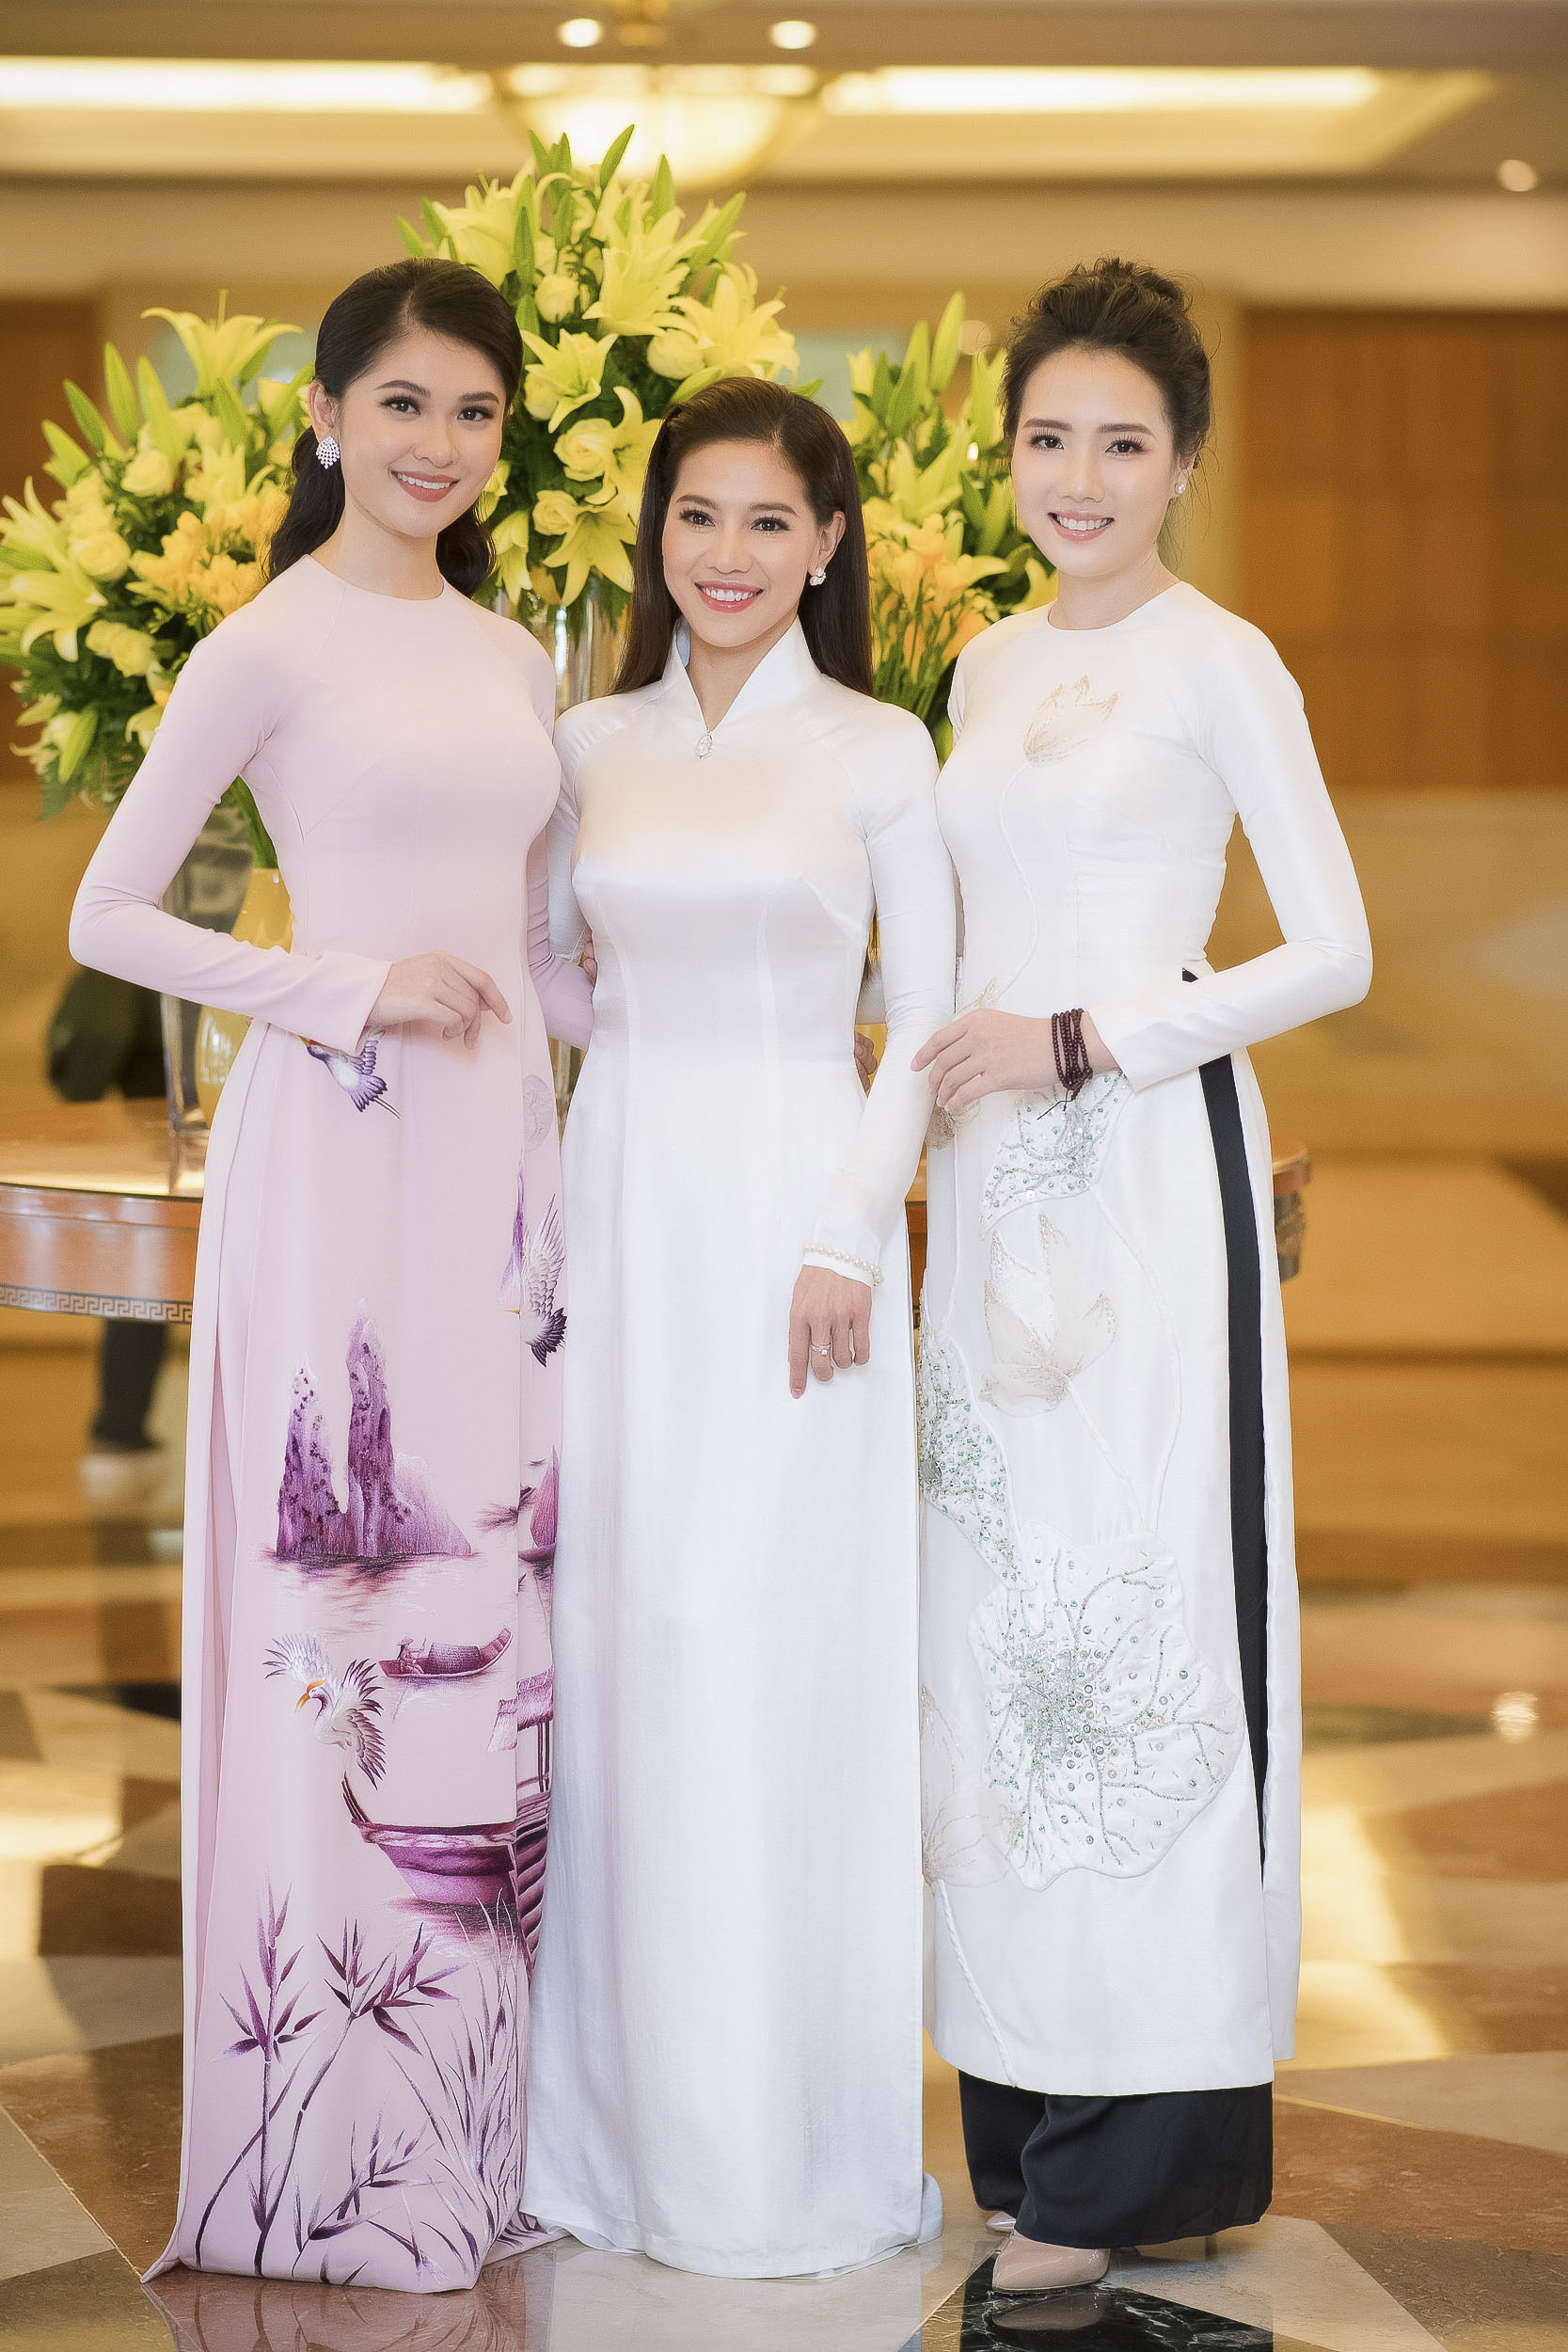 Sau lệnh 'cấm cửa', Hoa hậu Kỳ Duyên bất ngờ đồng hành cùng HHVN 2018 5